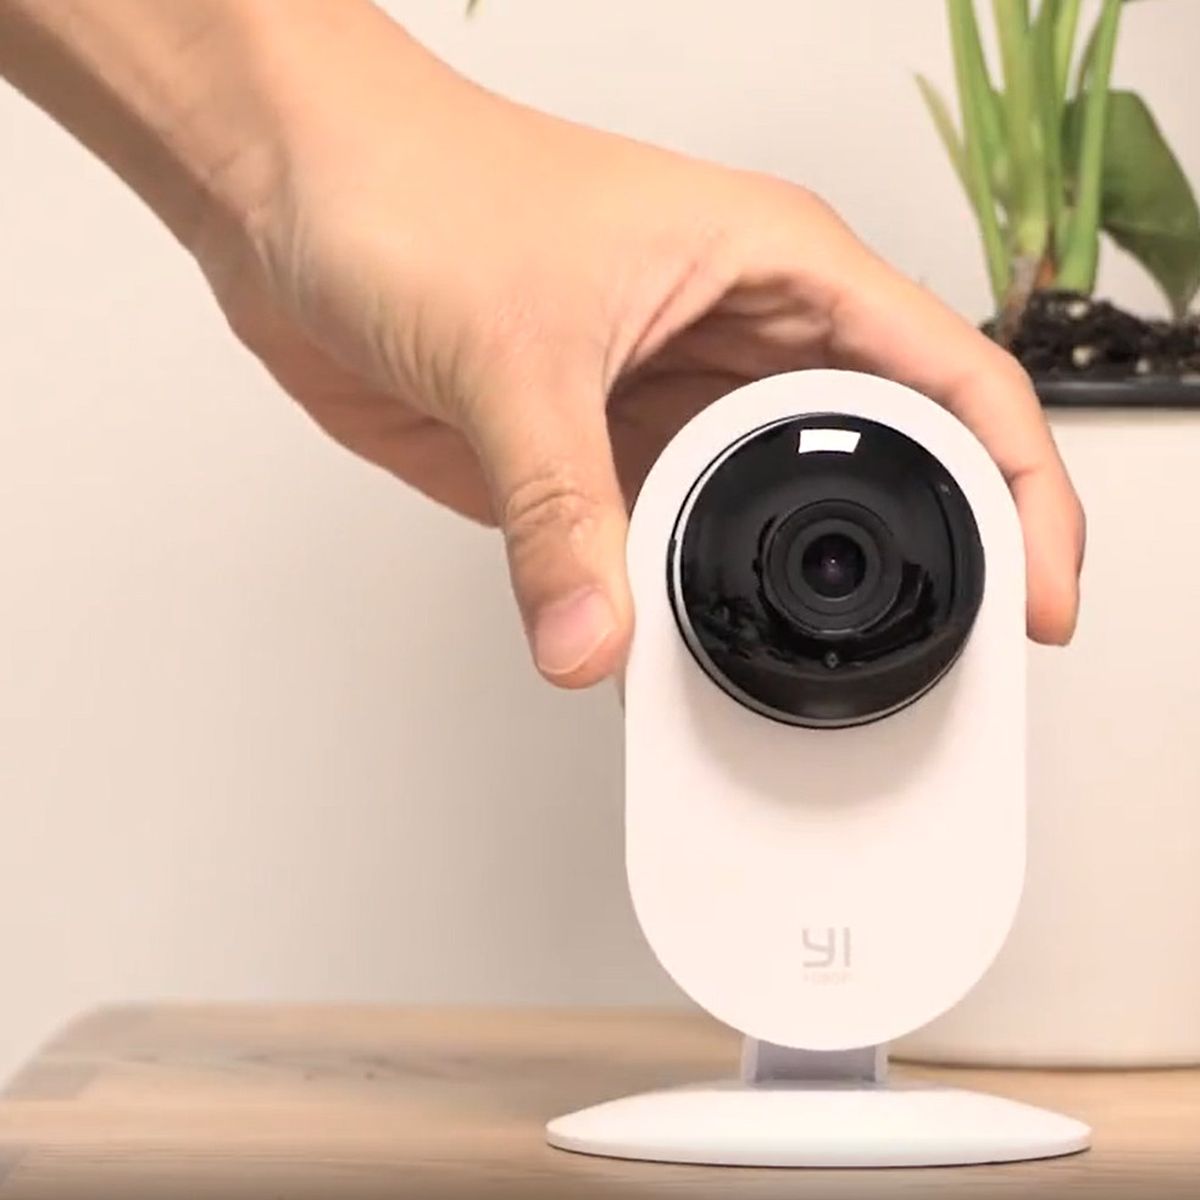 Asegura tu casa con esta cámara de seguridad Yi Home Camera por solo 16€  con envío desde España